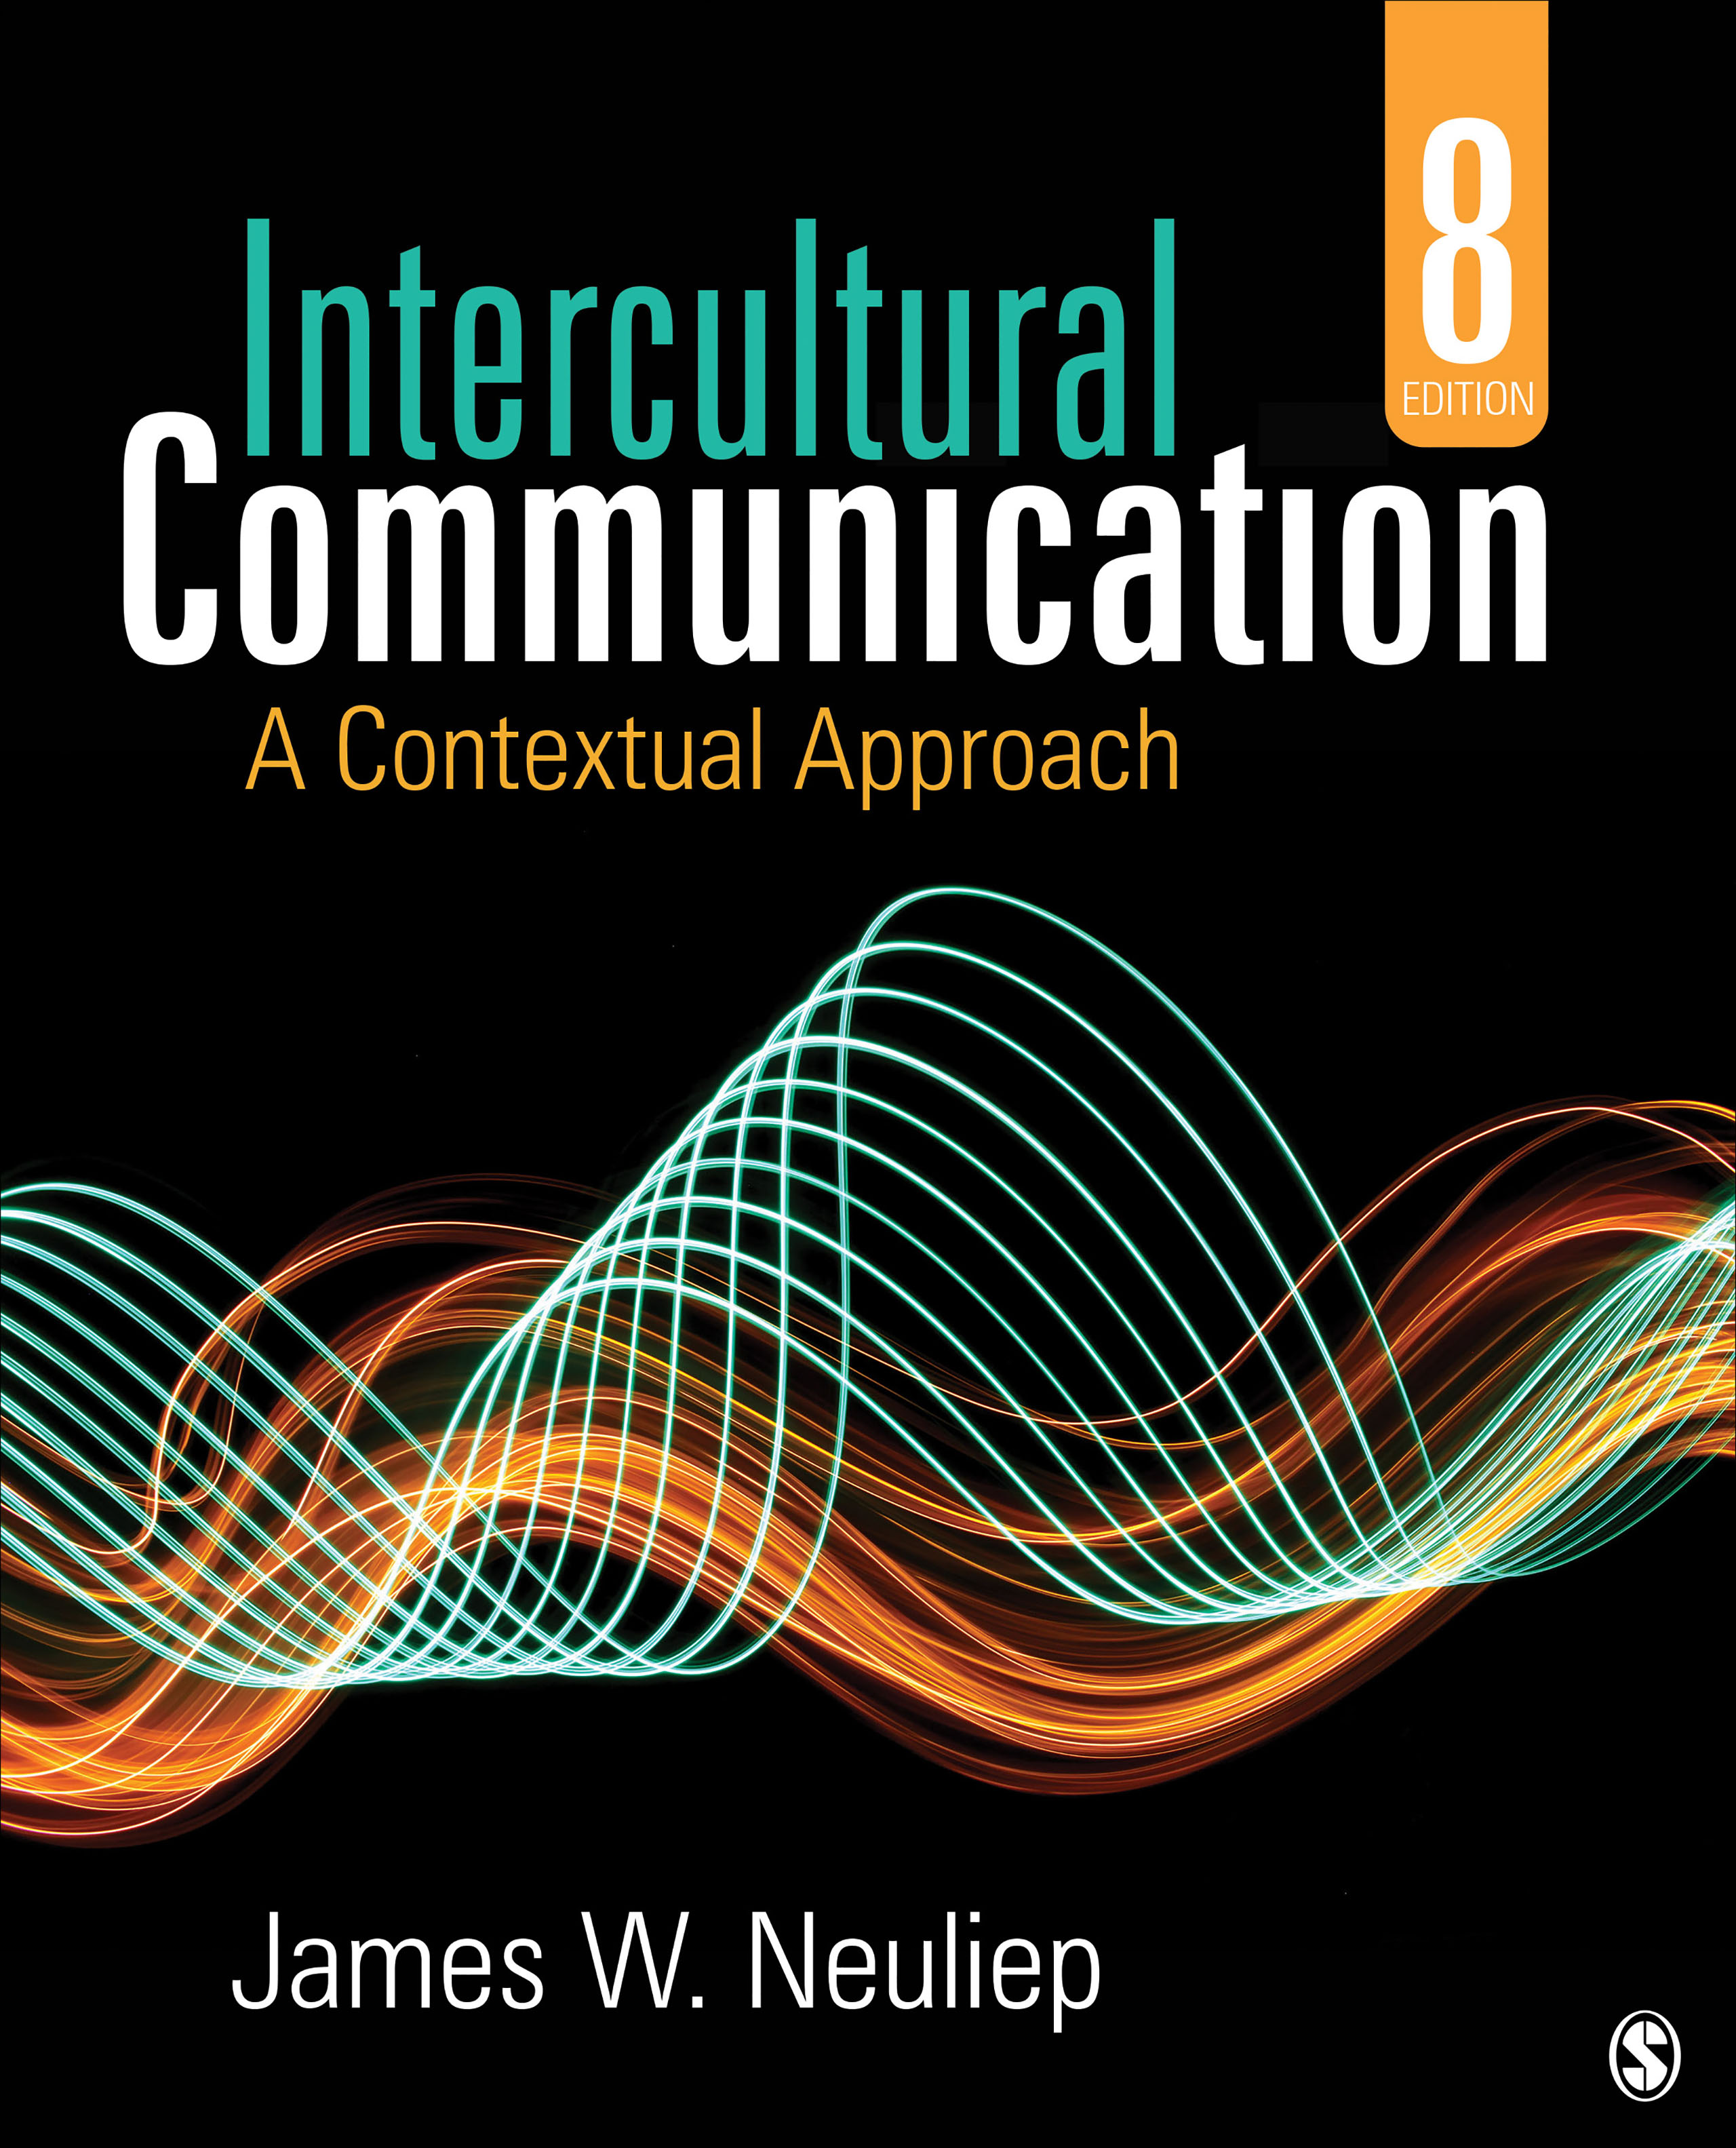 intercultural communication topics